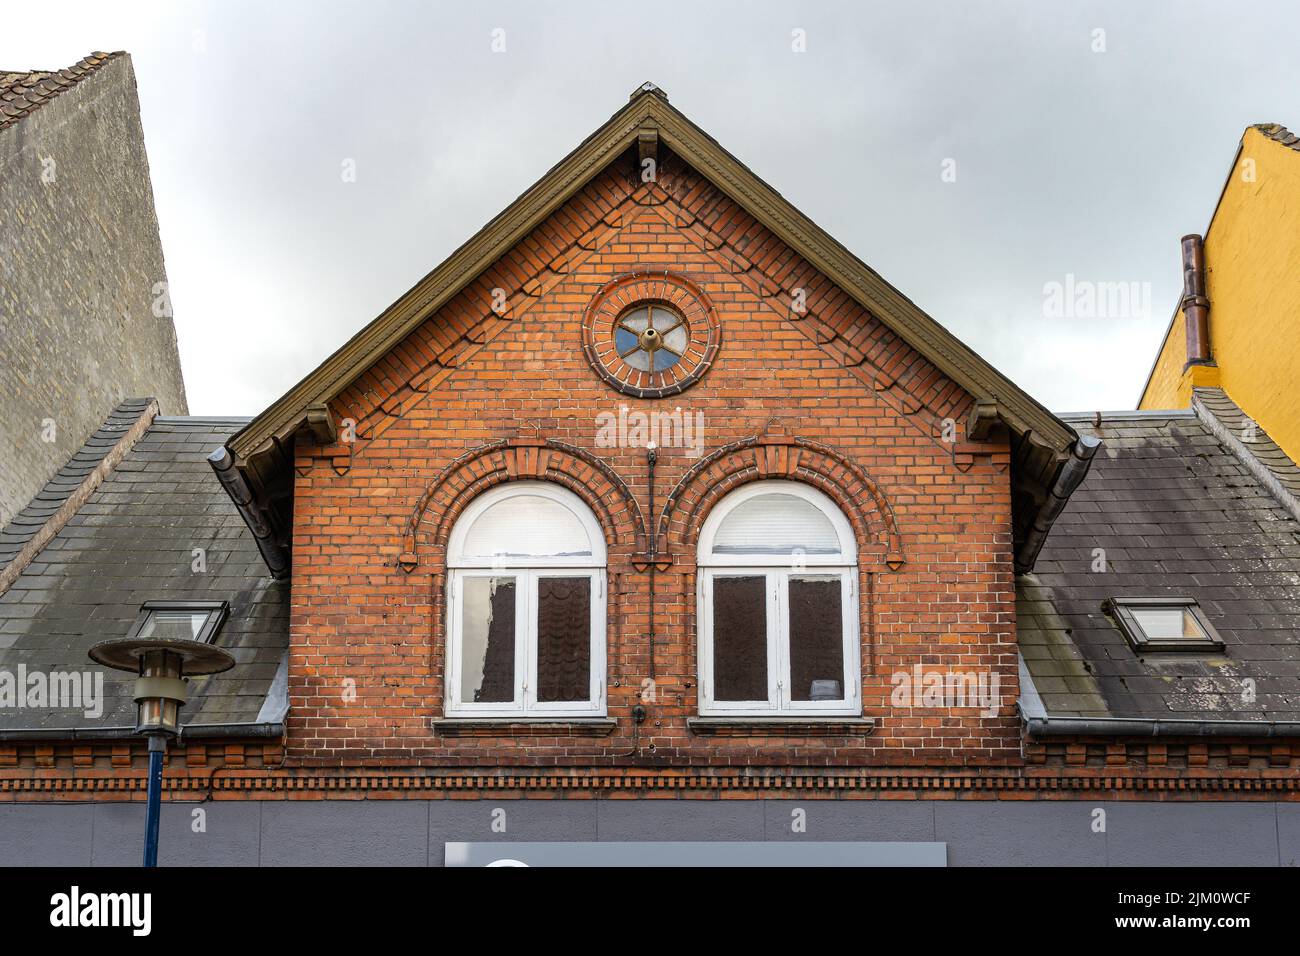 Particolare architettonico di una tradizionale casa danese con due grandi finestre e un tetto spiovente. Assens, Fyn Island, Danimarca, Europa Foto Stock